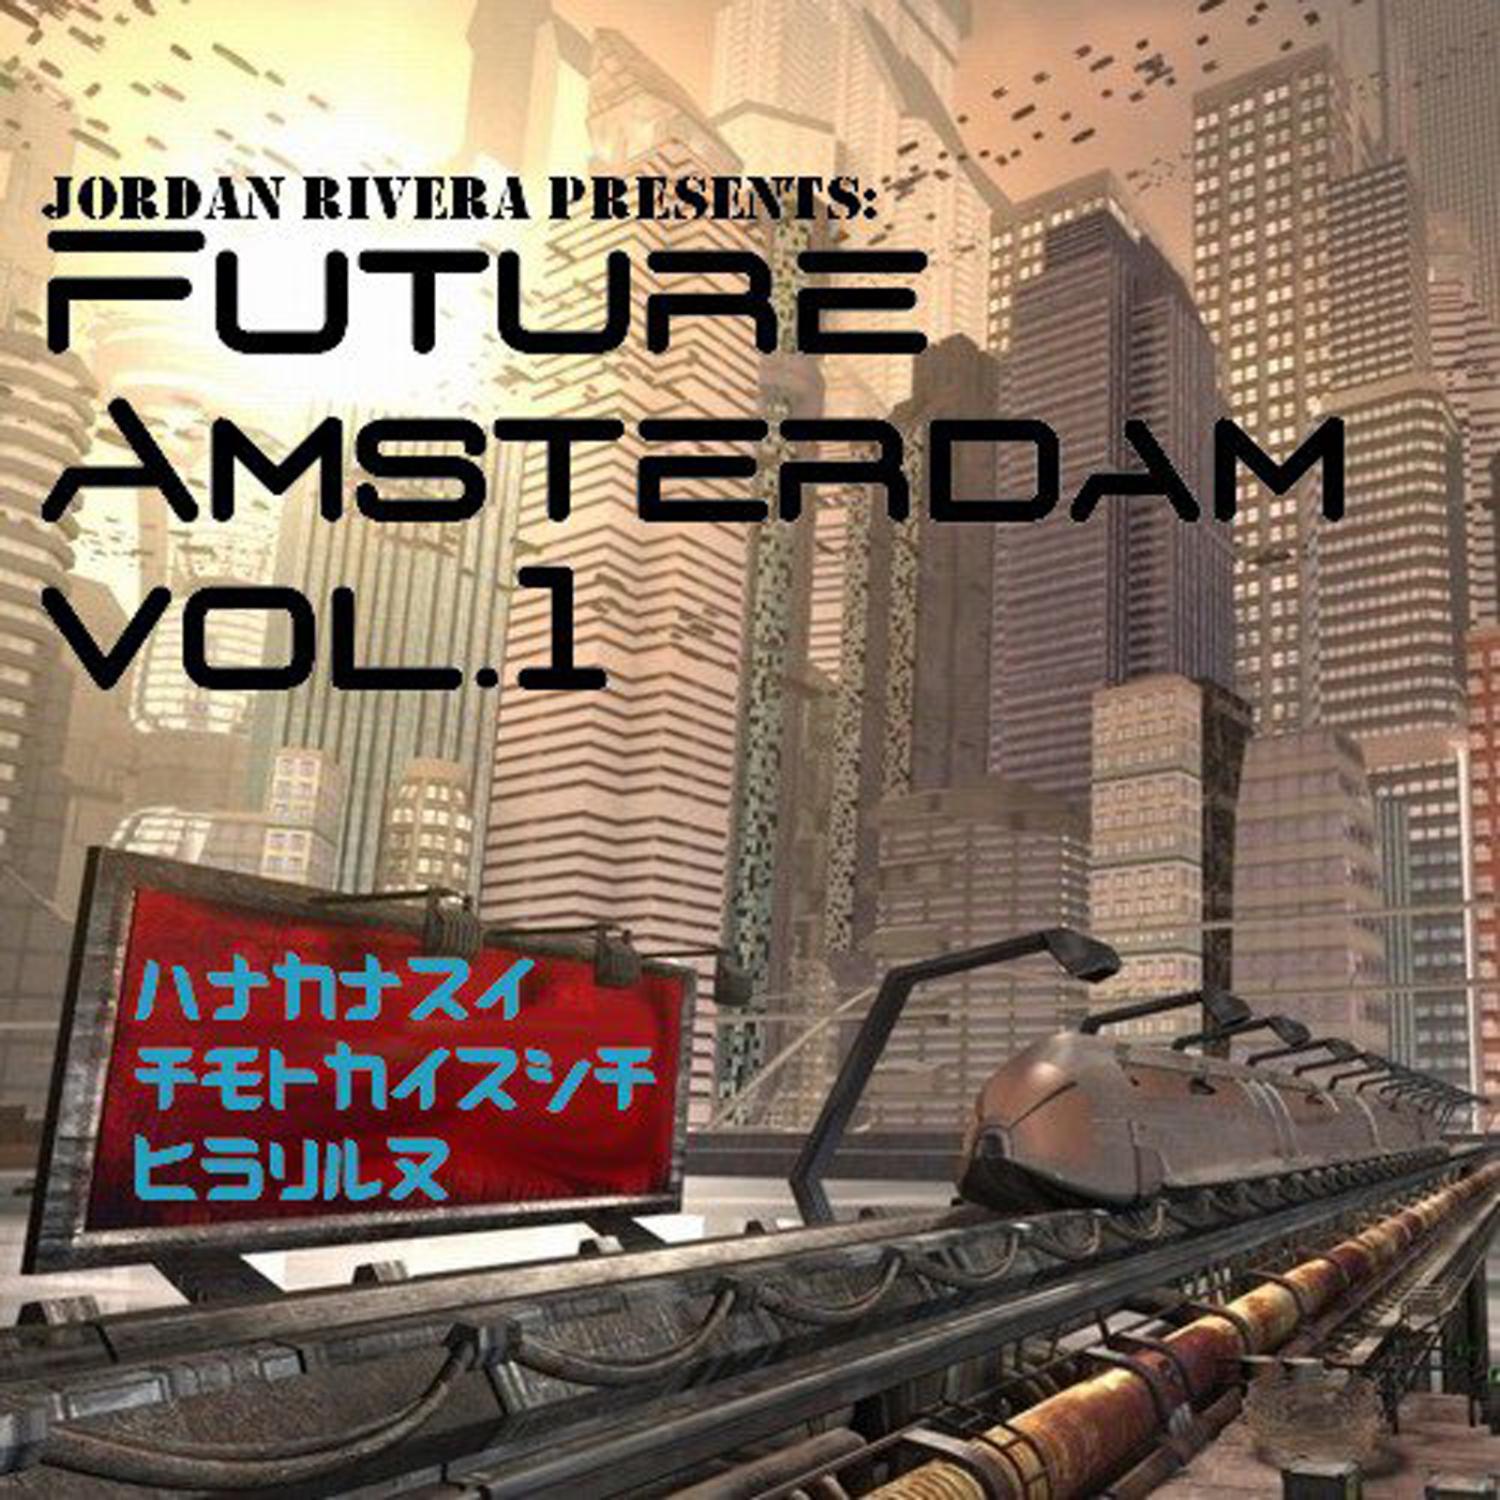 Jordan Rivera Presents: Future Amsterdam, Vol. 1